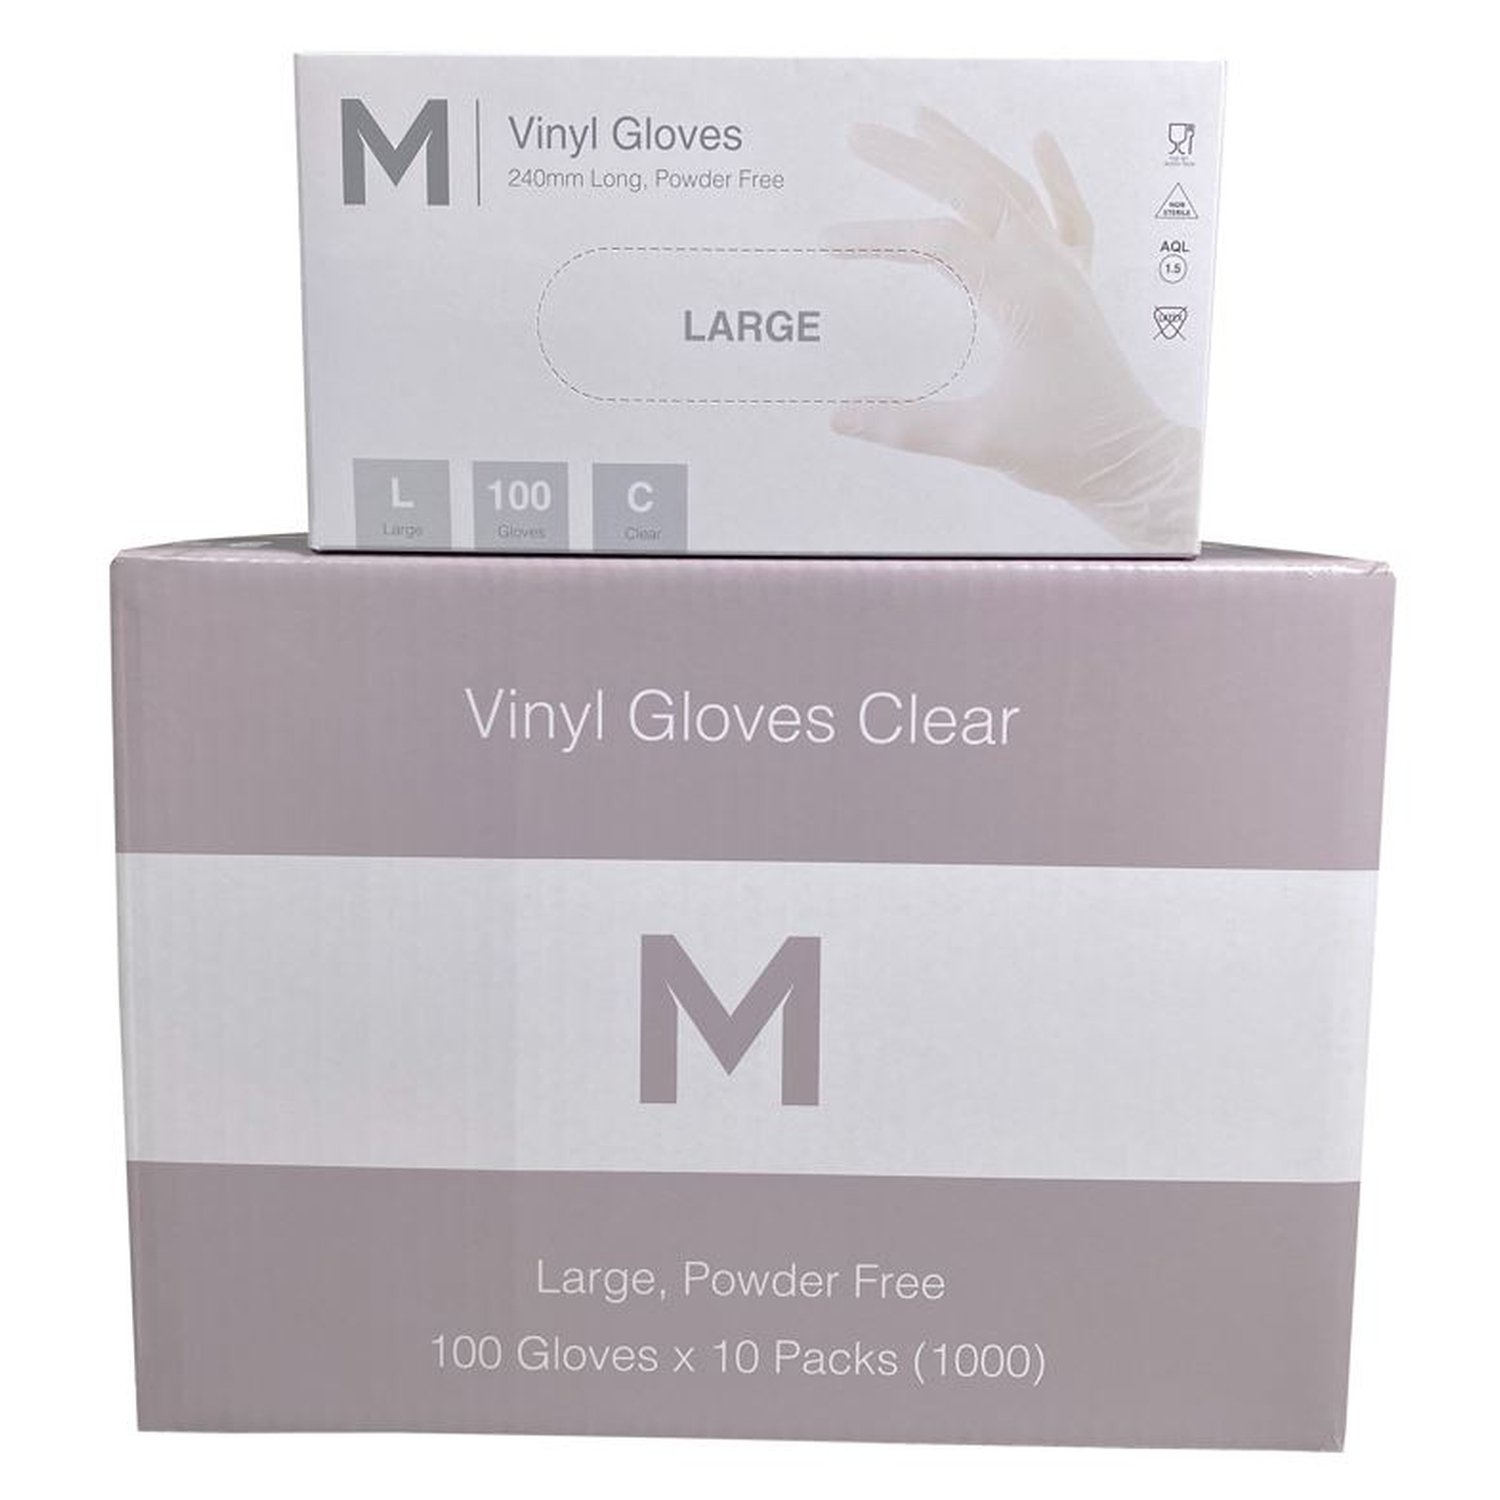 Vinyl Powder Free Gloves Box 100